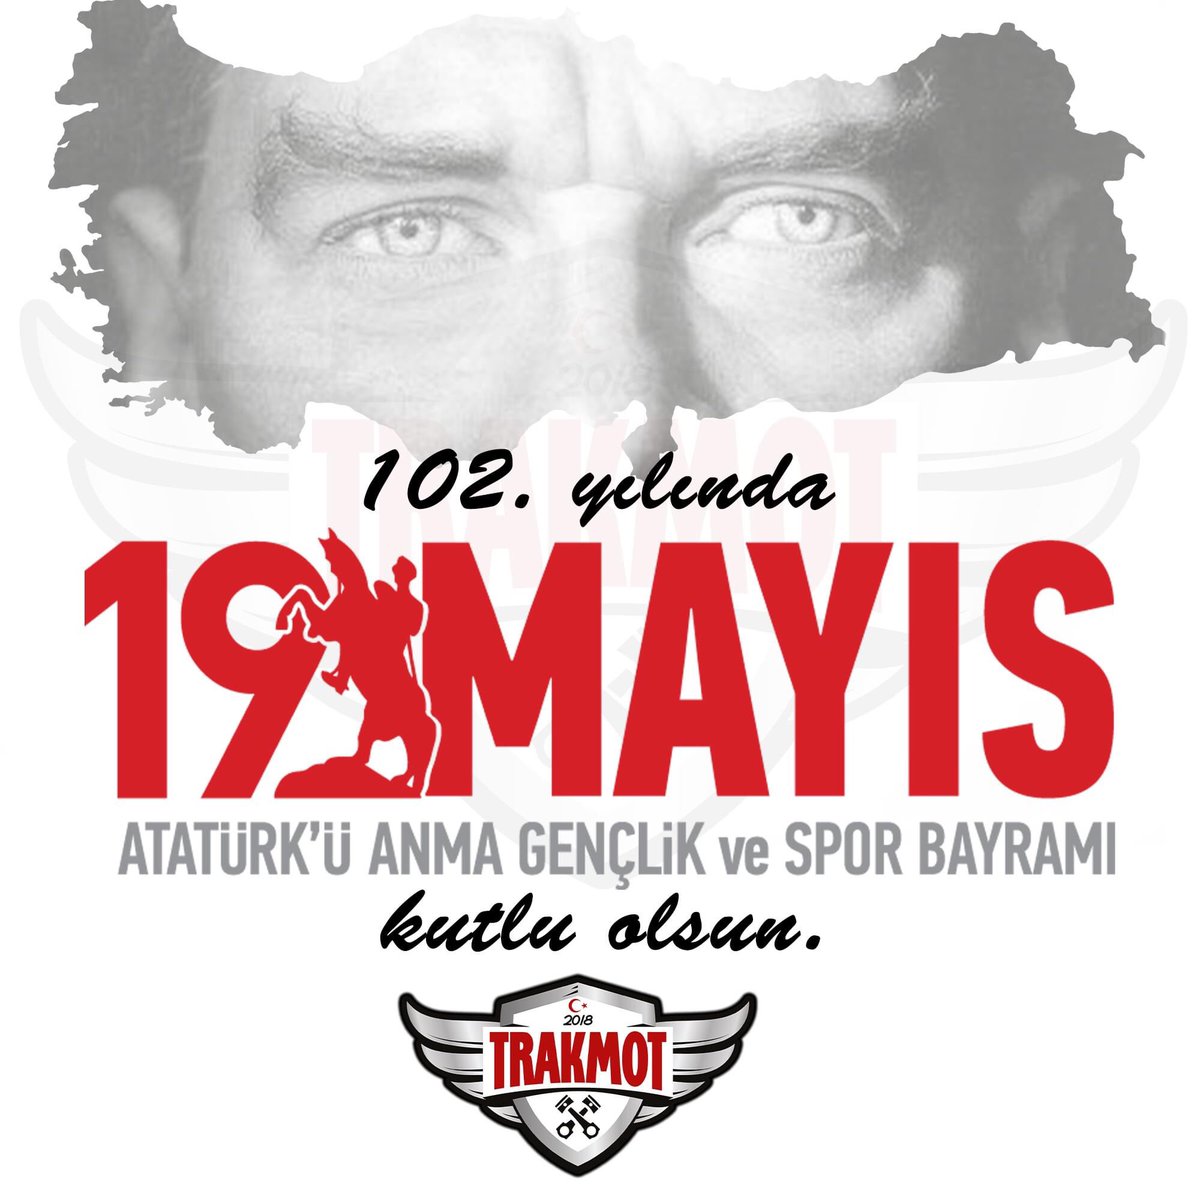 🎉 102. yılında 19 Mayıs Atatürk'ü Anma Gençlik ve Spor Bayramı kutlu olsun...
.
#19mayısatatürküanmagençlikvesporbayramı #19mayıs #atamizindeyiz #trakmot #çorlu #tekirdağ #edirne #kırklareli #trakya #motosiklettutkunlari #motosiklethayranları